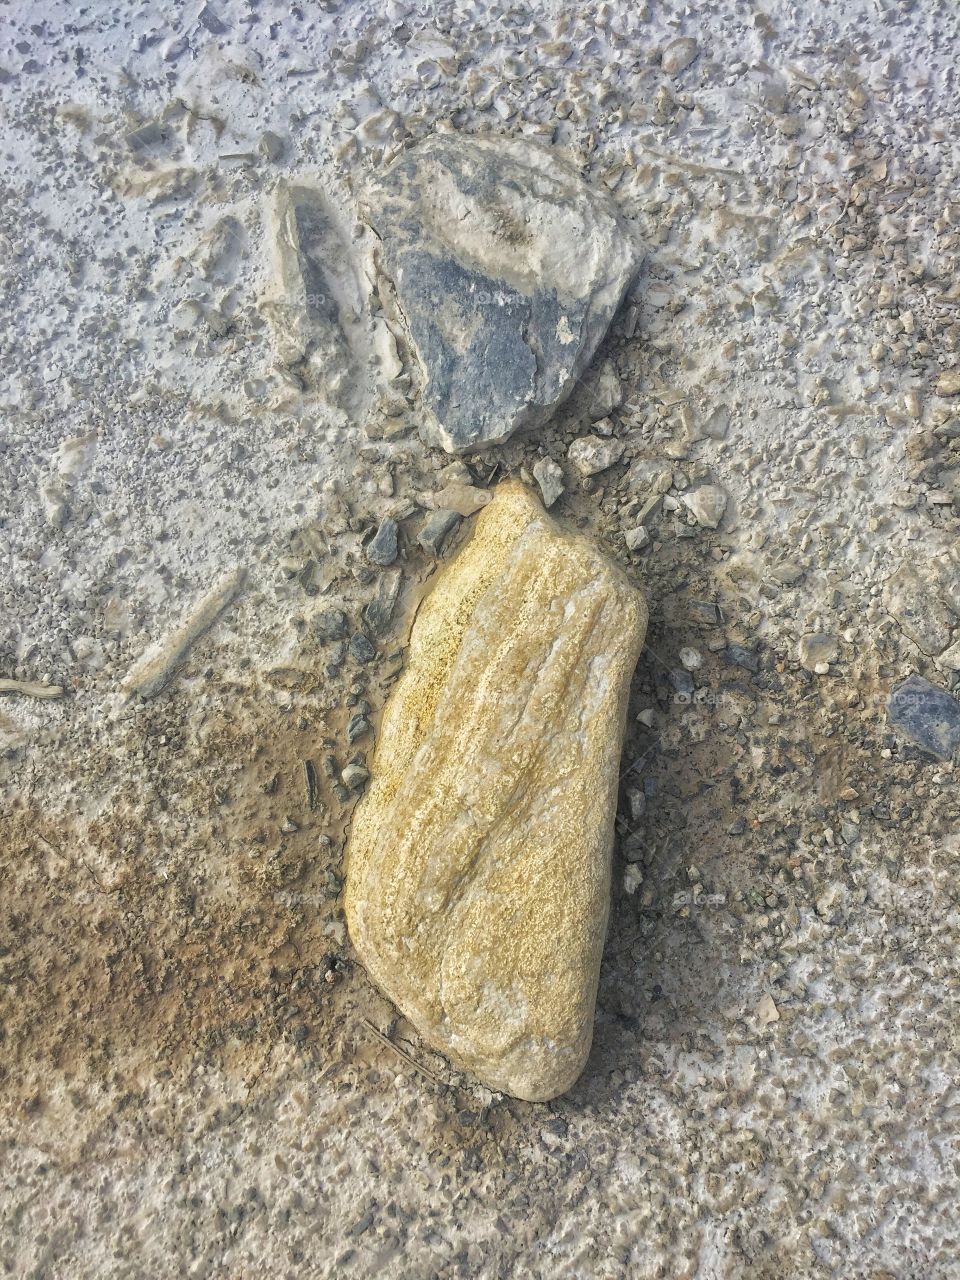 The little rocks in the street